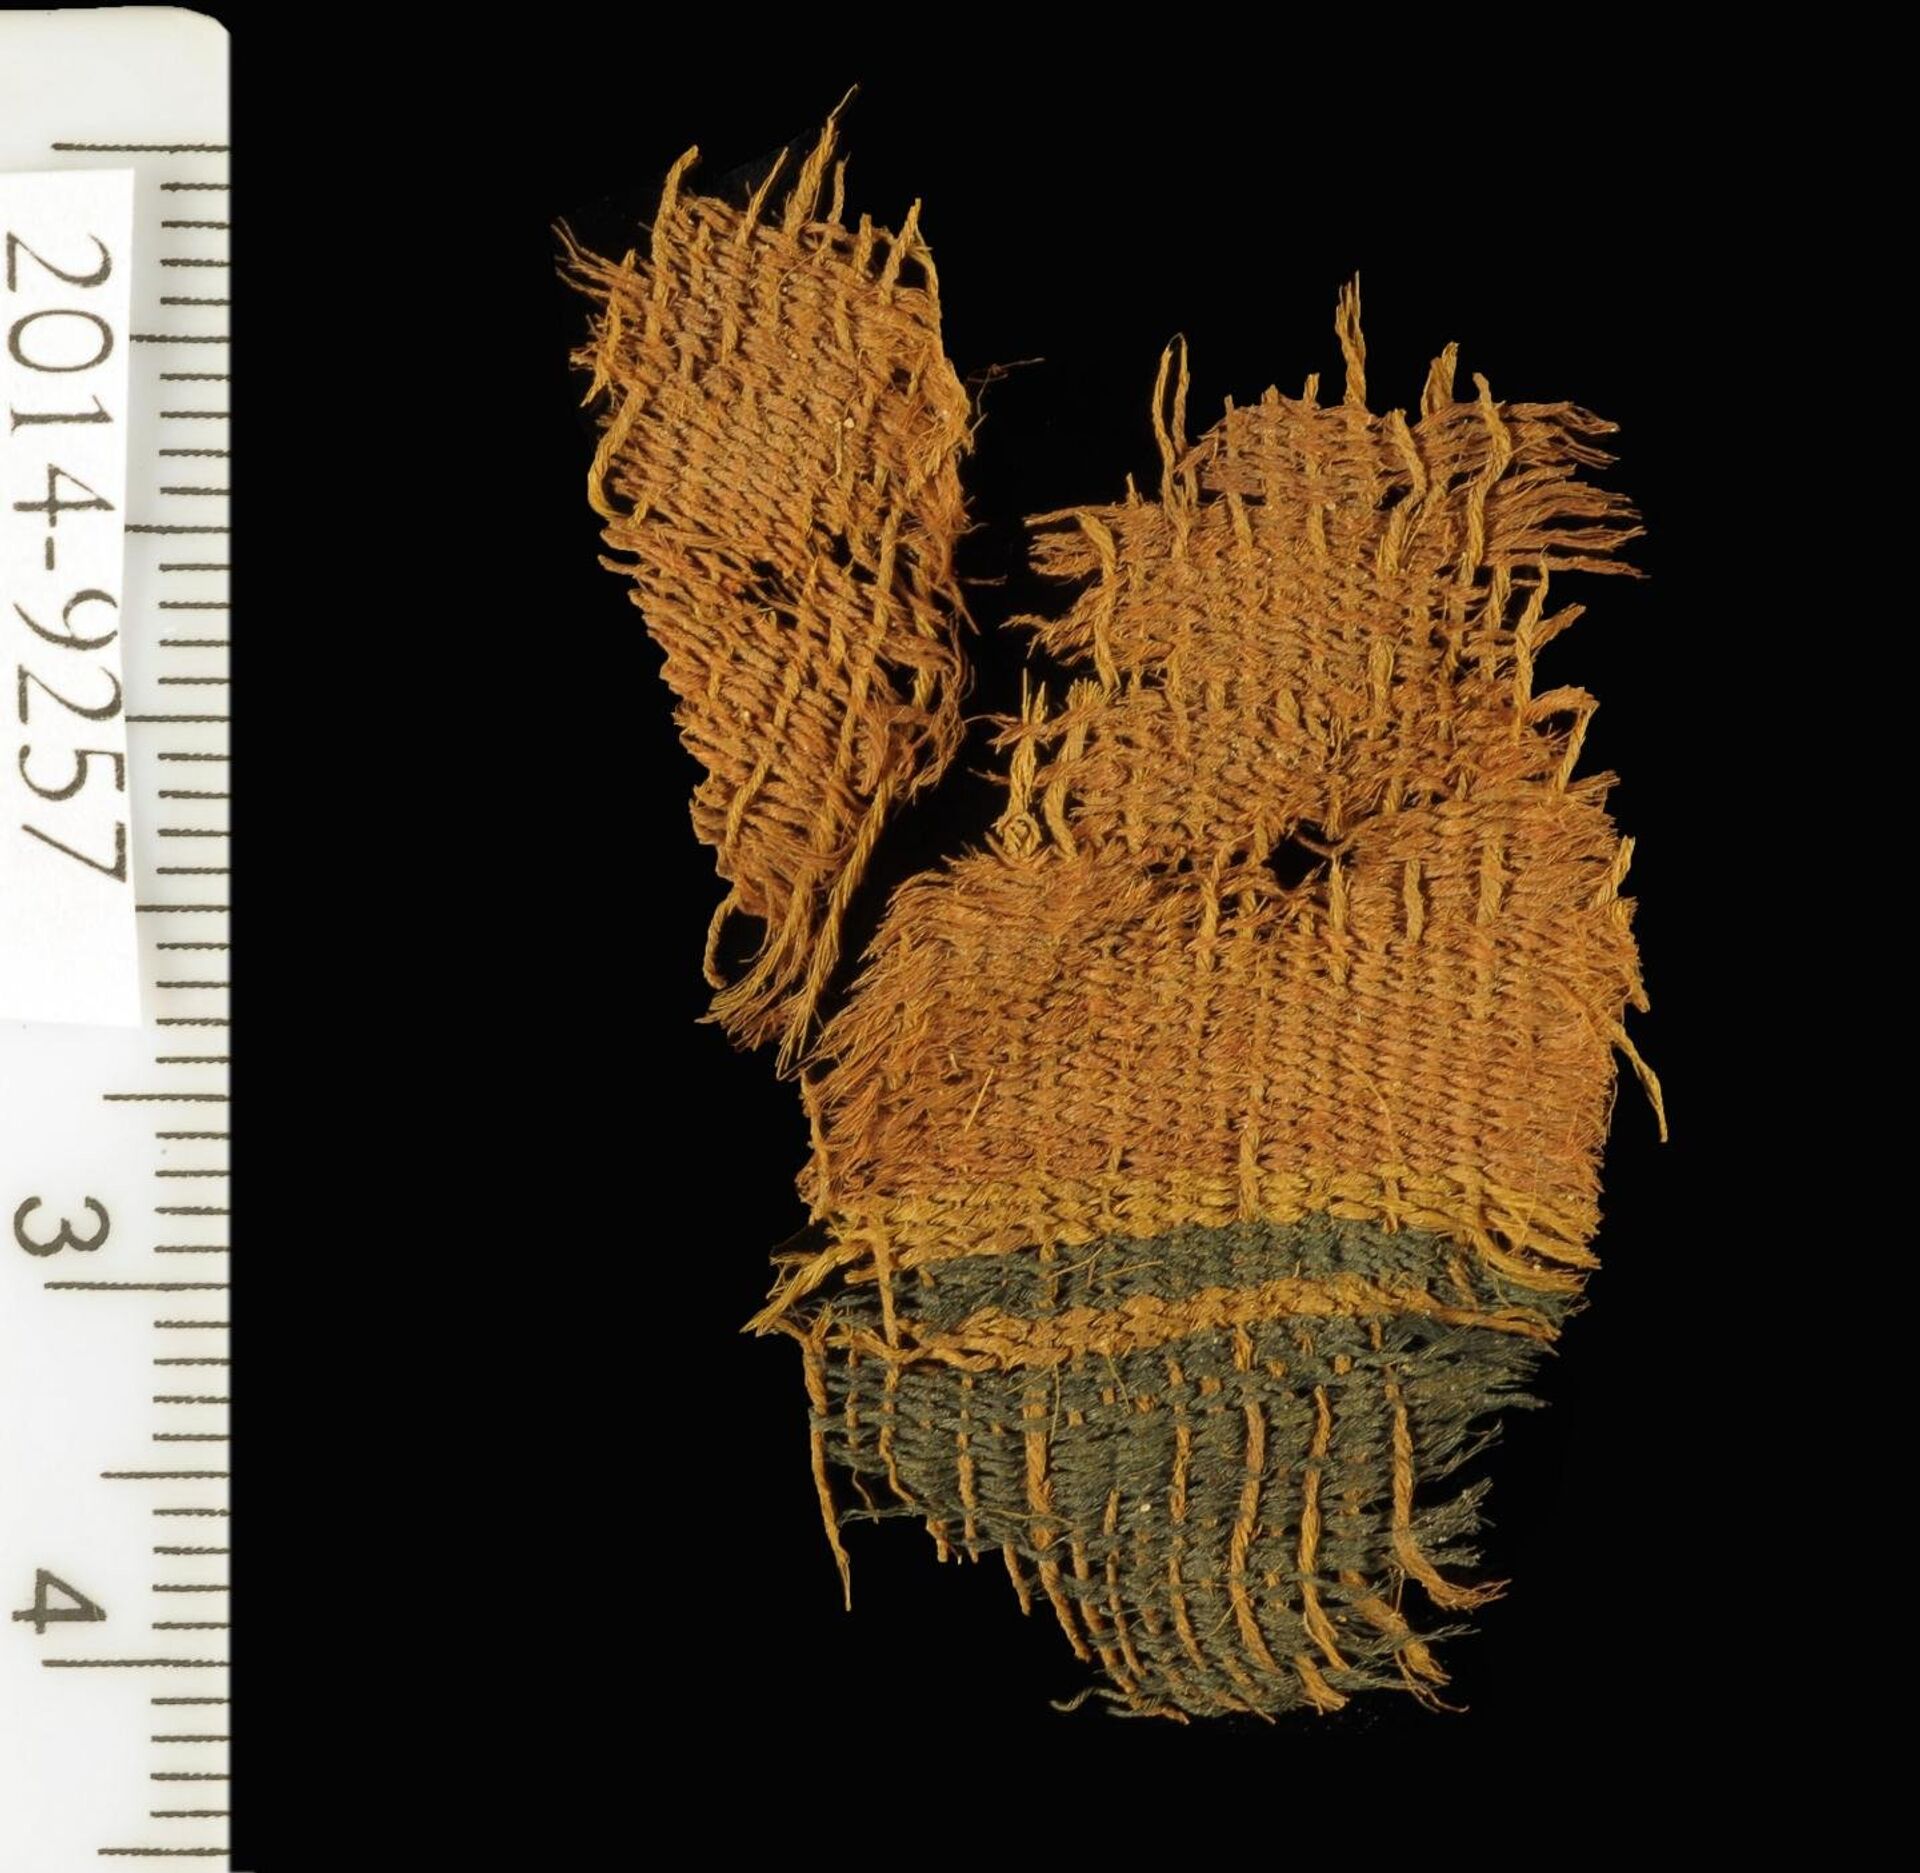 Ткань, найденная в медной шахте в окрестностях Тимны в Израиле - РИА Новости, 1920, 27.12.2021